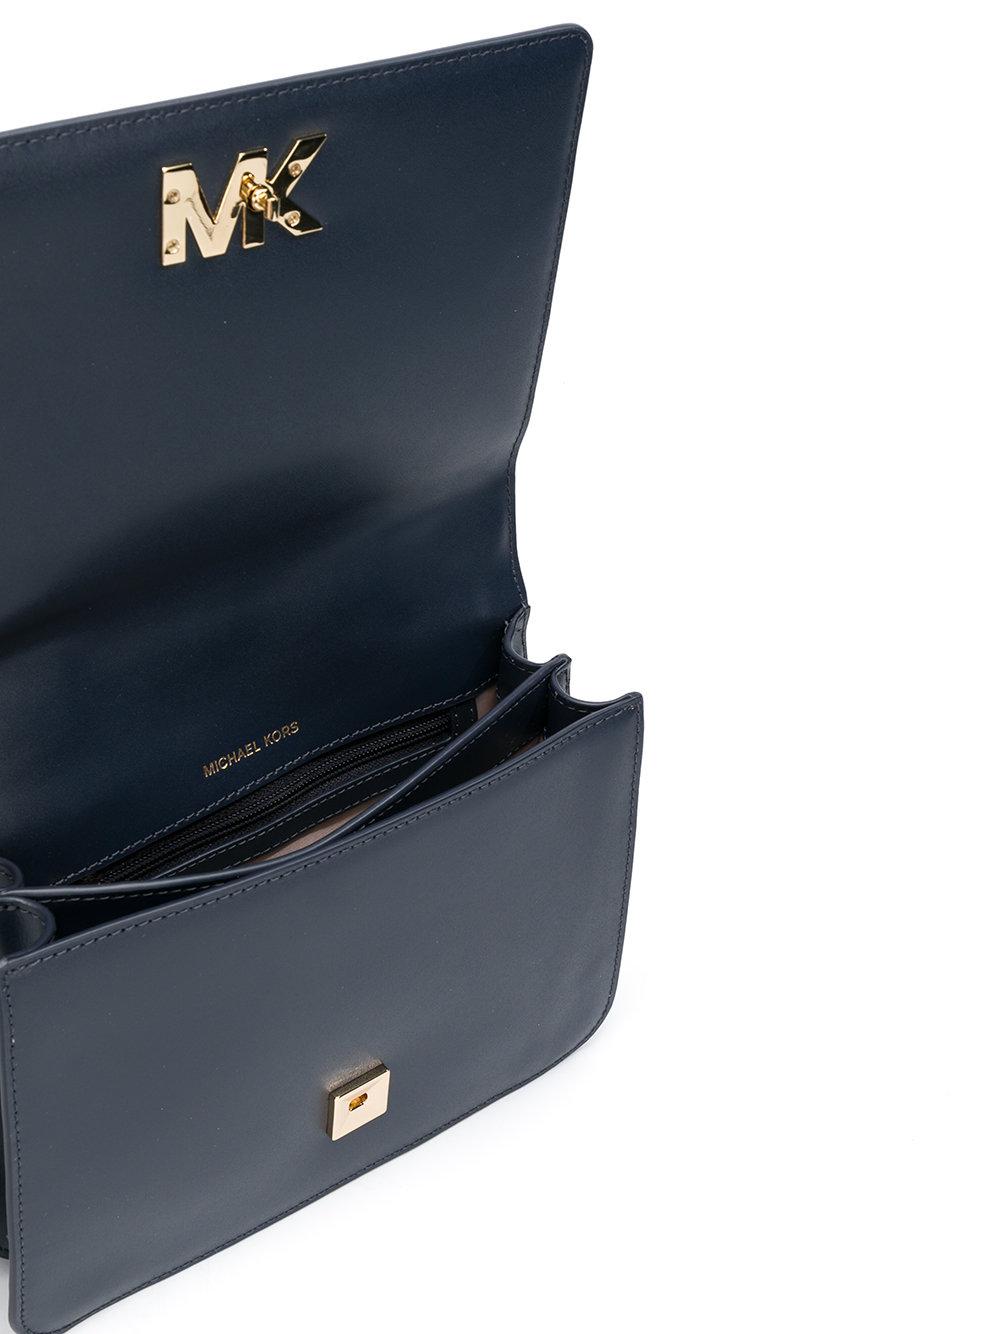 Michael Kors Mott Leather Crossbody Bag in Blue - Lyst